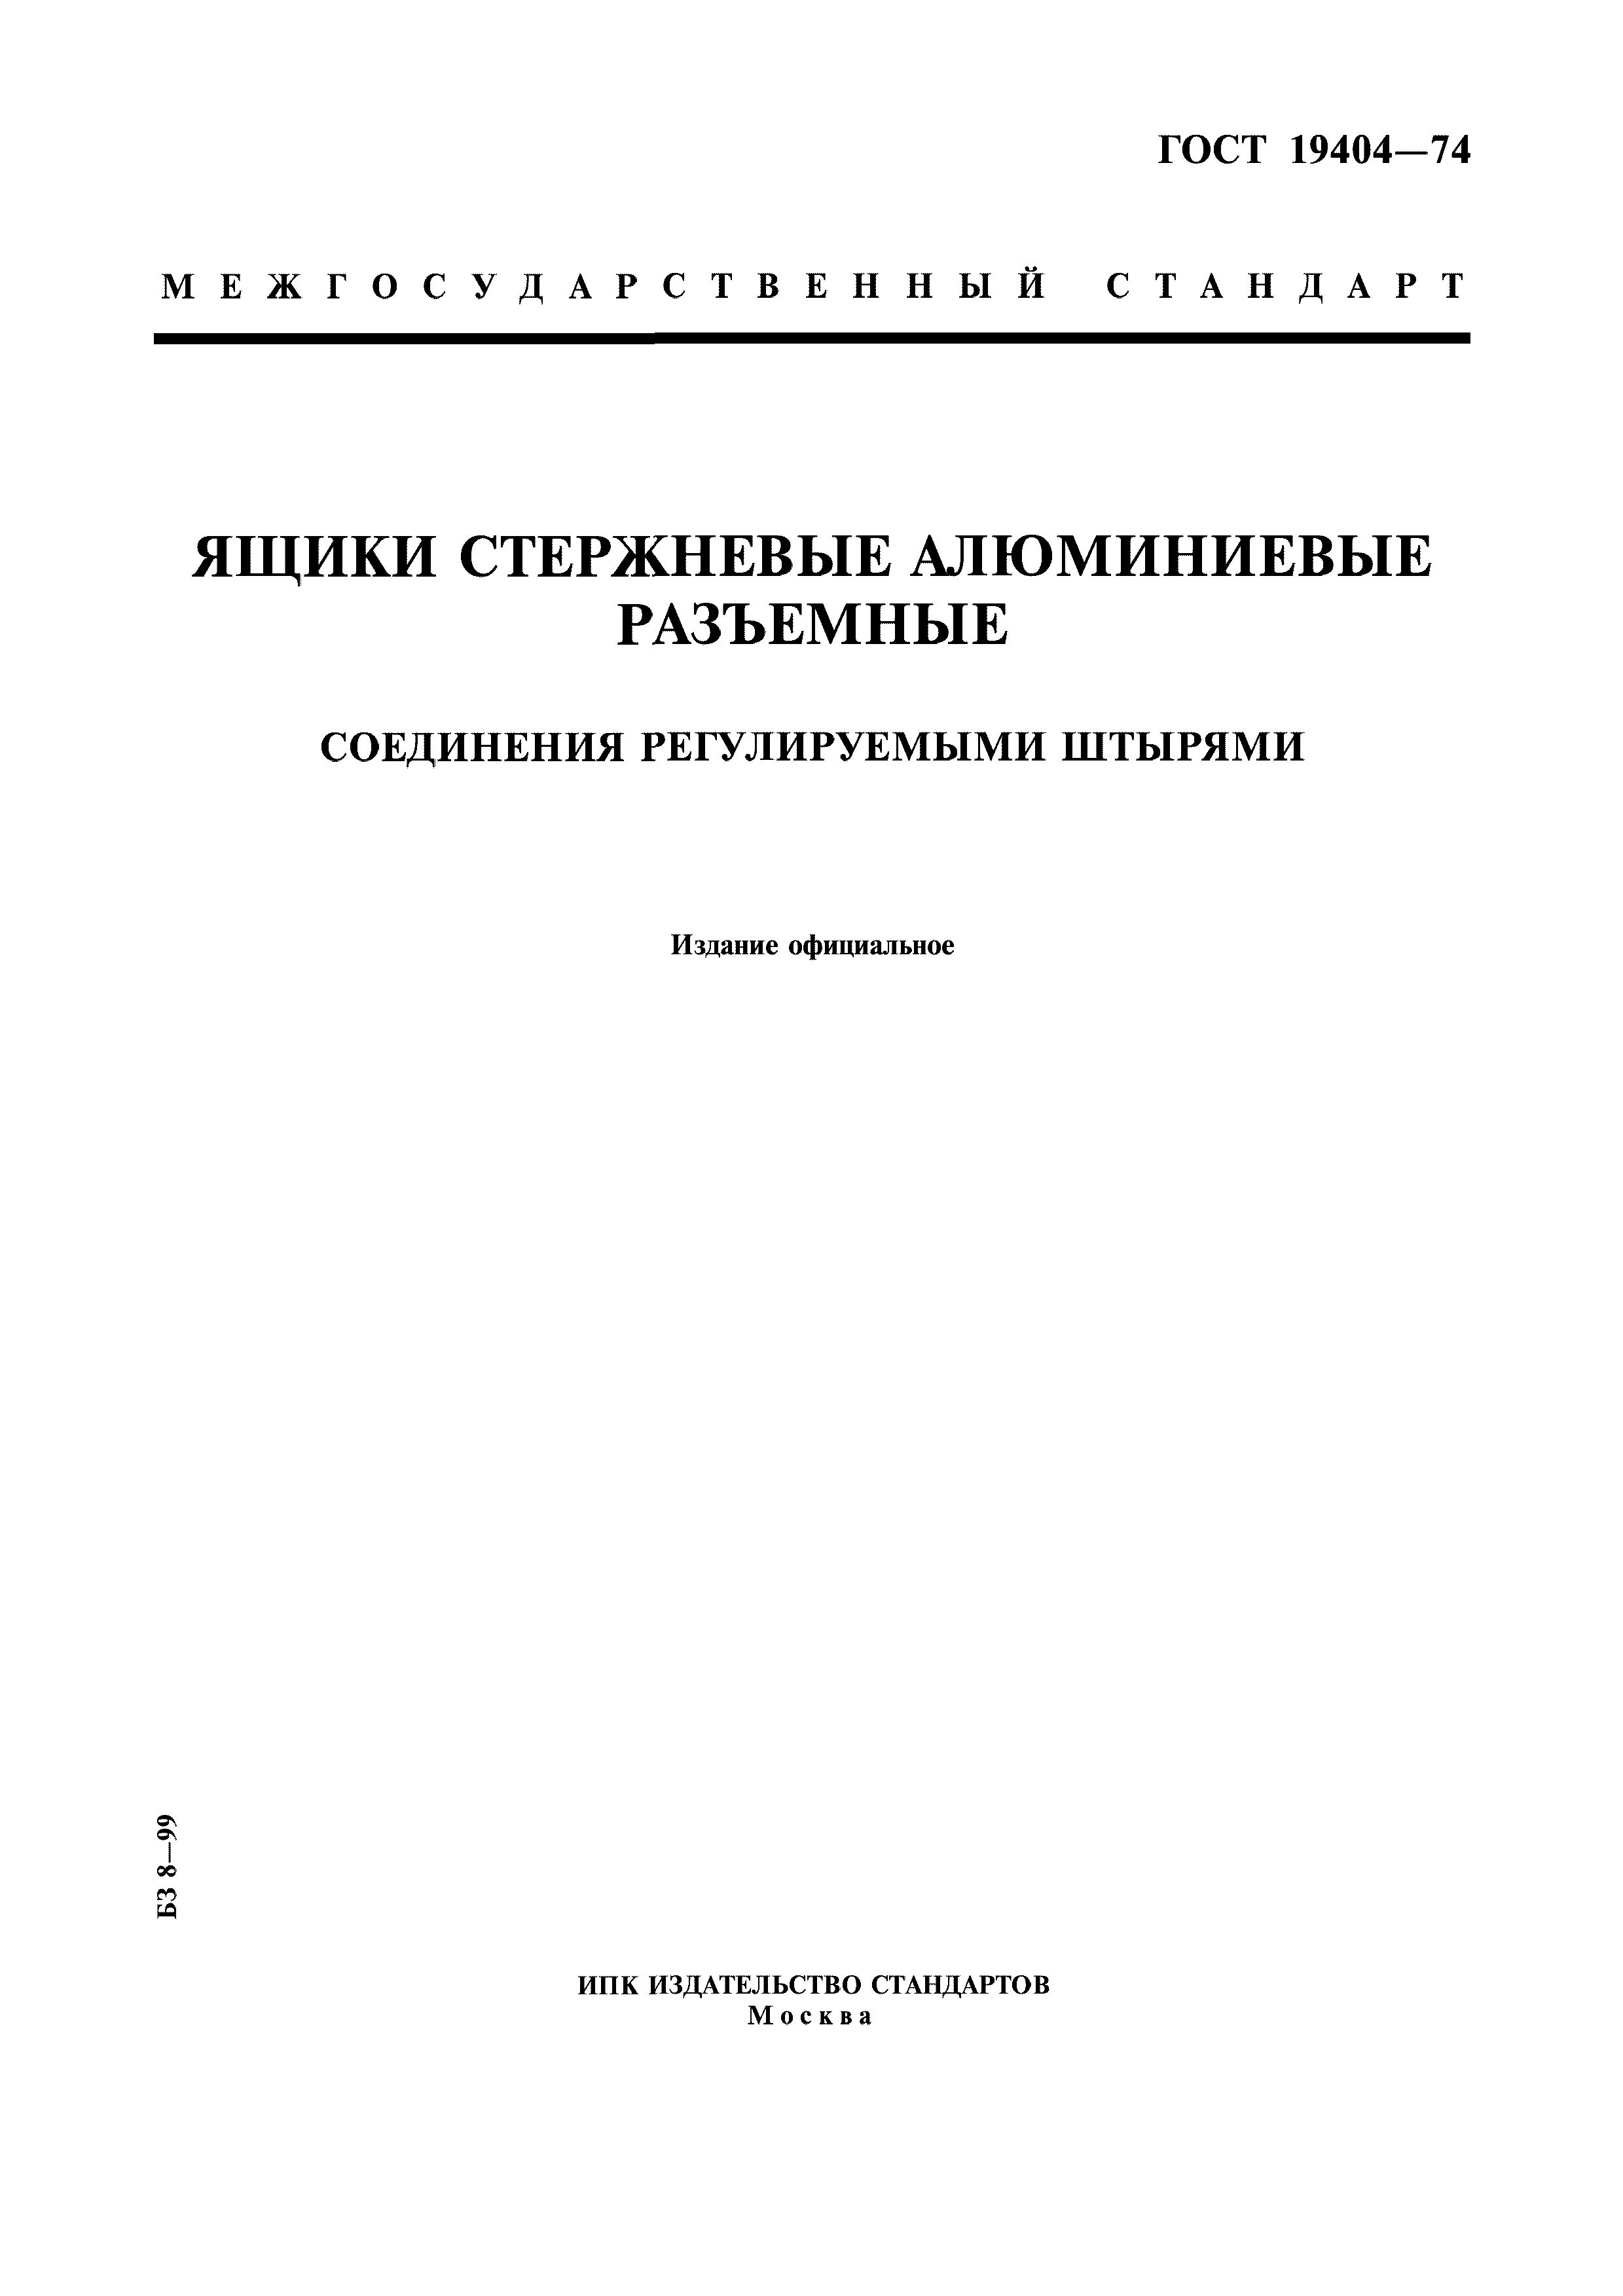 Скачать ГОСТ 19404-74 Ящики Стержневые Алюминиевые Разъемные.